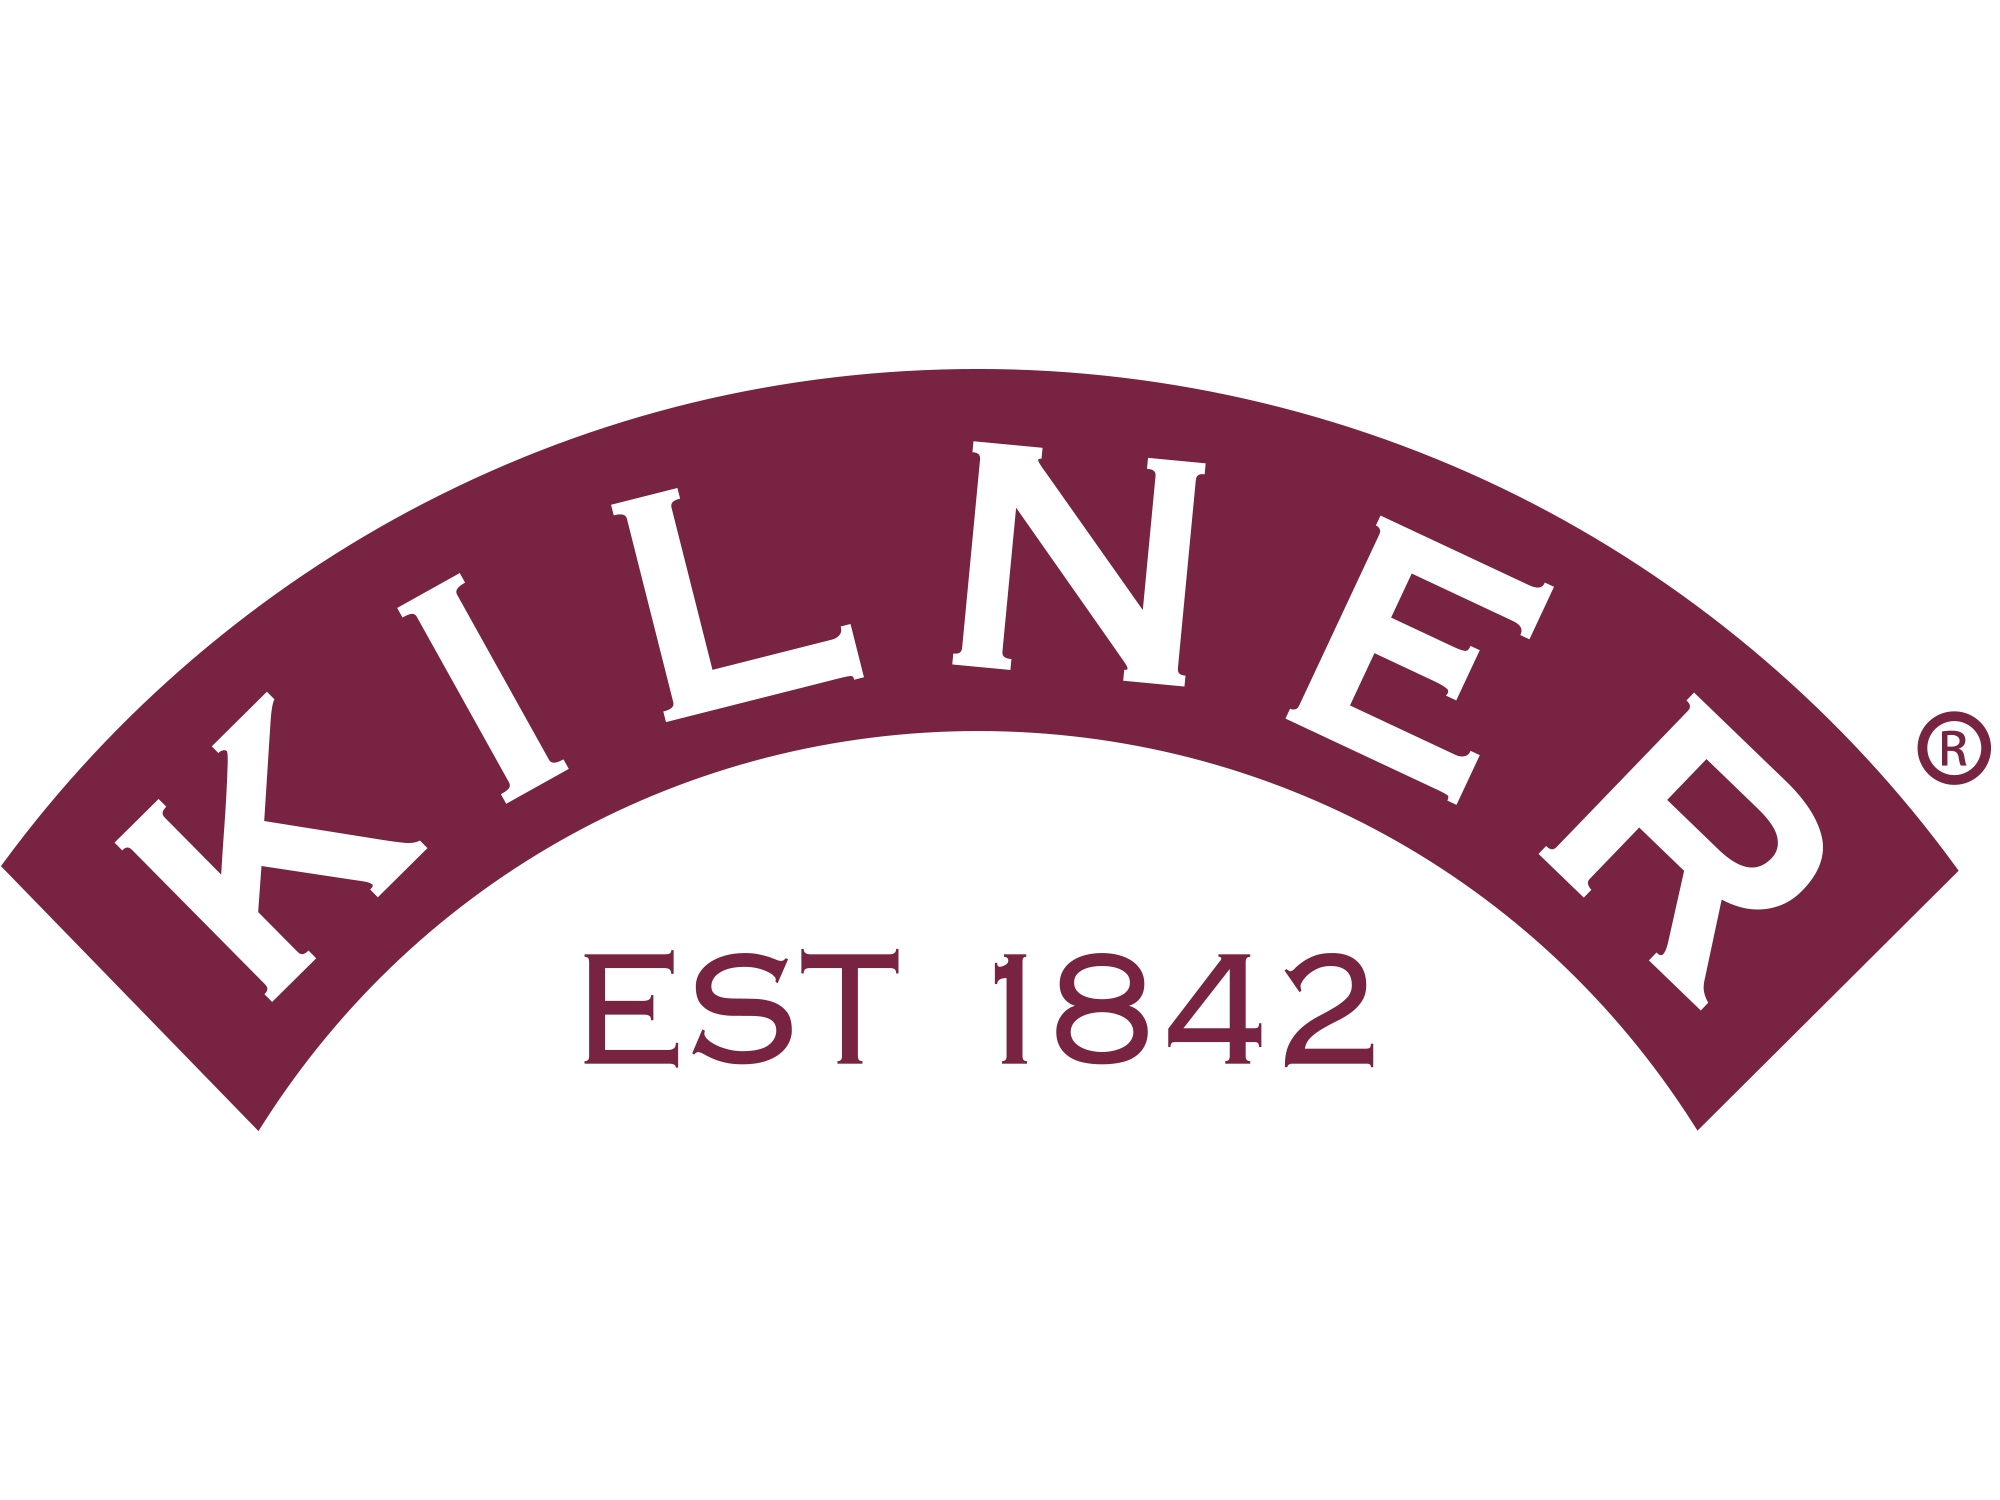 Logo Kilner